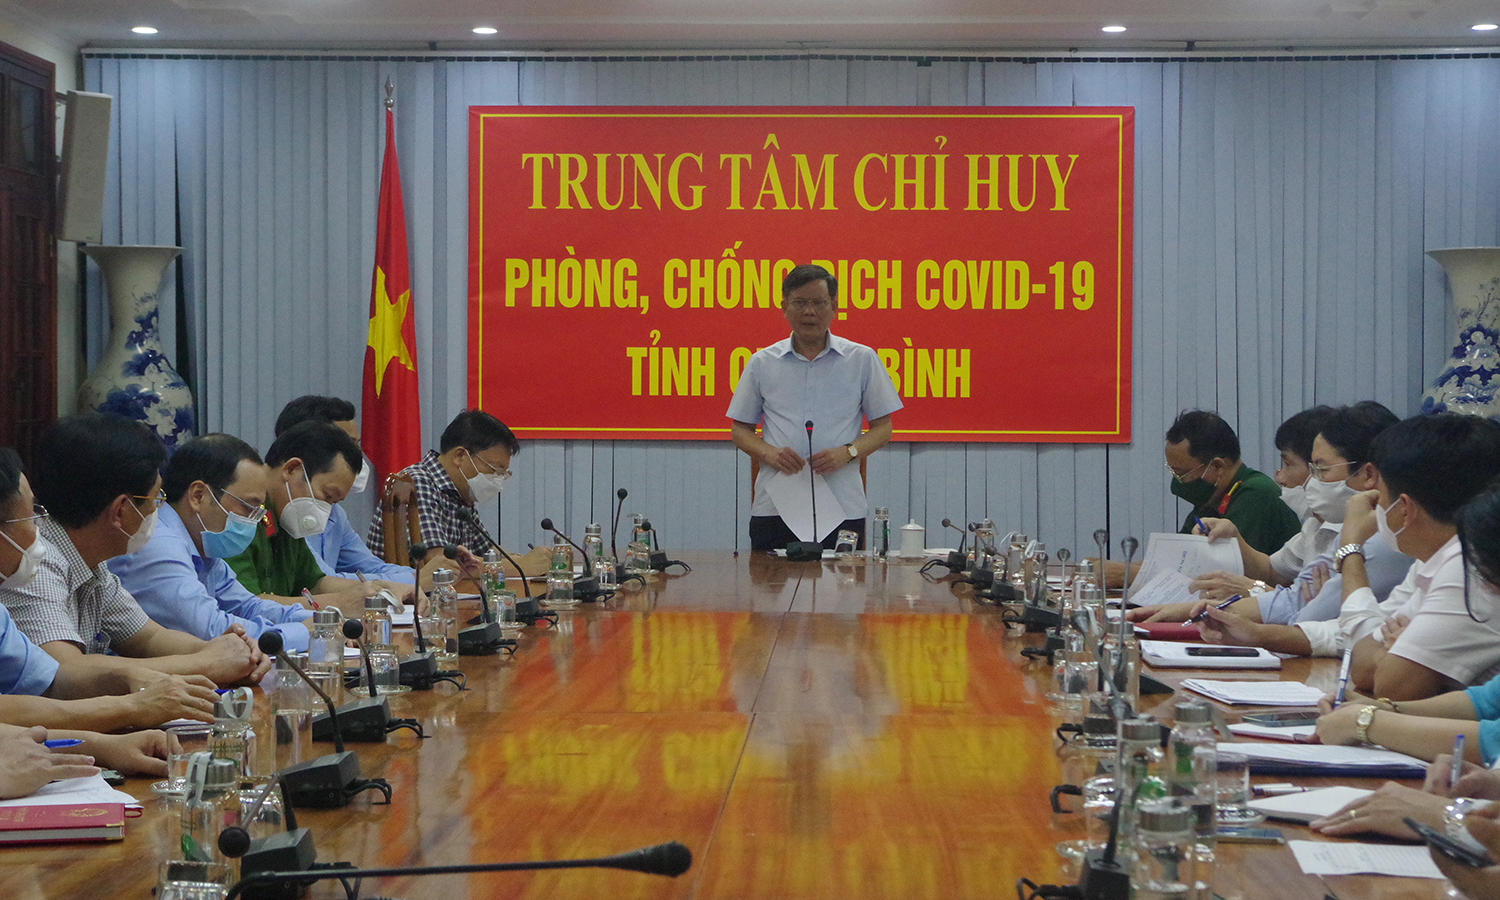 Đồng chí Chủ tịch UBND tỉnh Trần Thắng đề nghị các sở, ngành và địa phương bảo đảm chuẩn bị tốt các điều kiện cho việc đón công dân về địa phương.